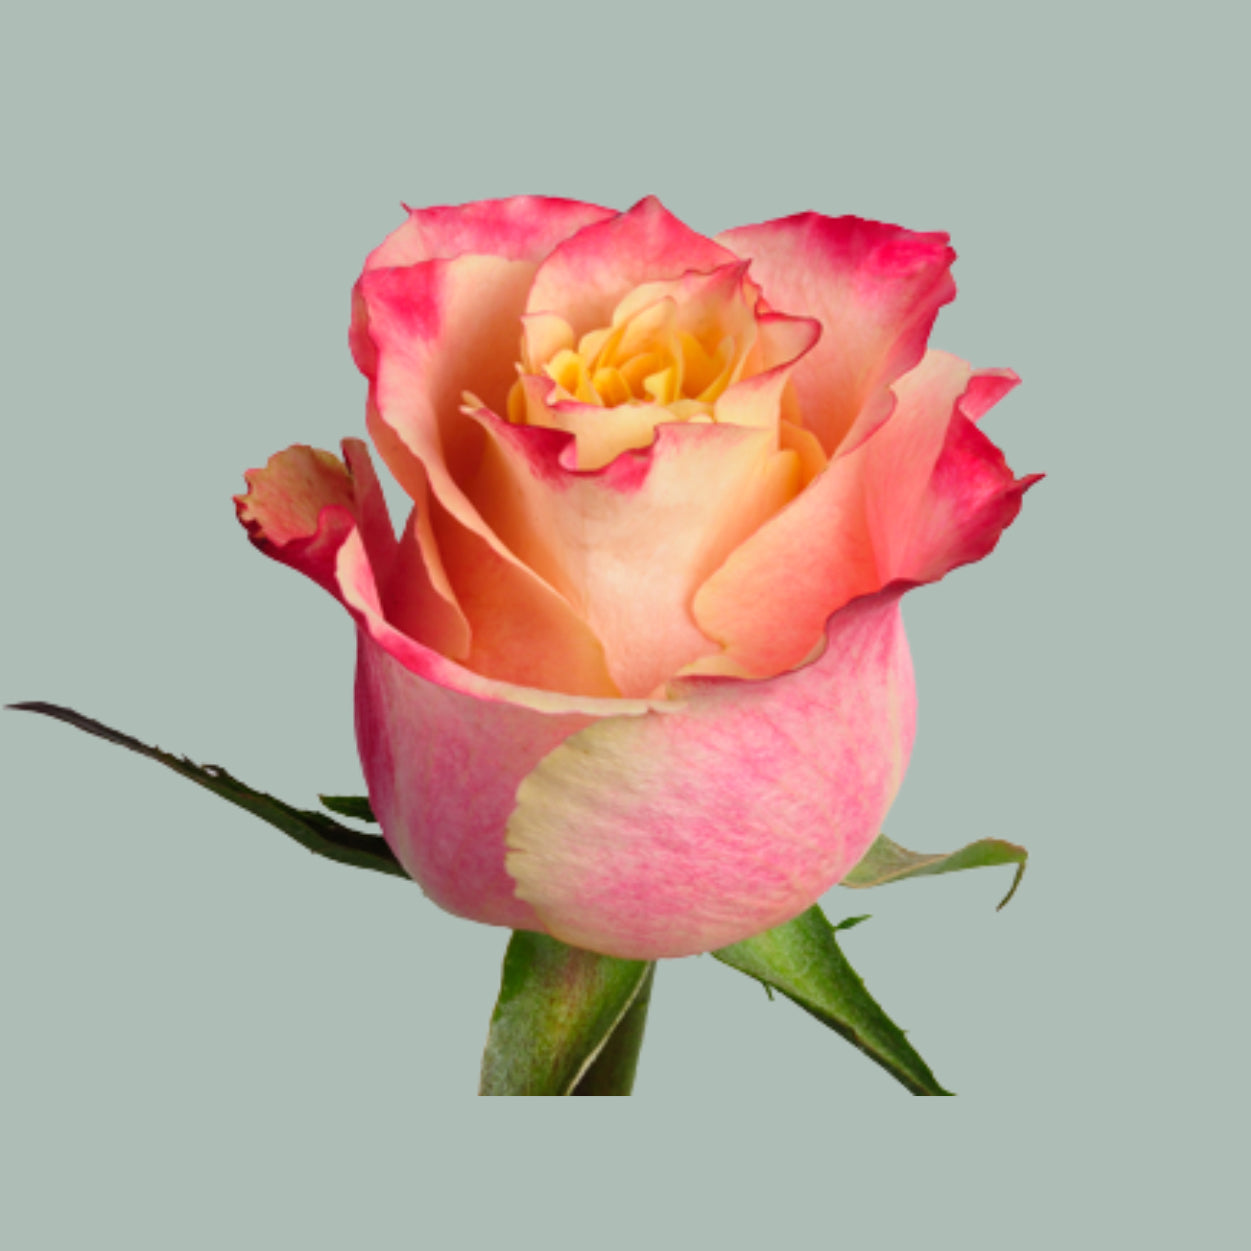 Rose 3D (20 Stems)